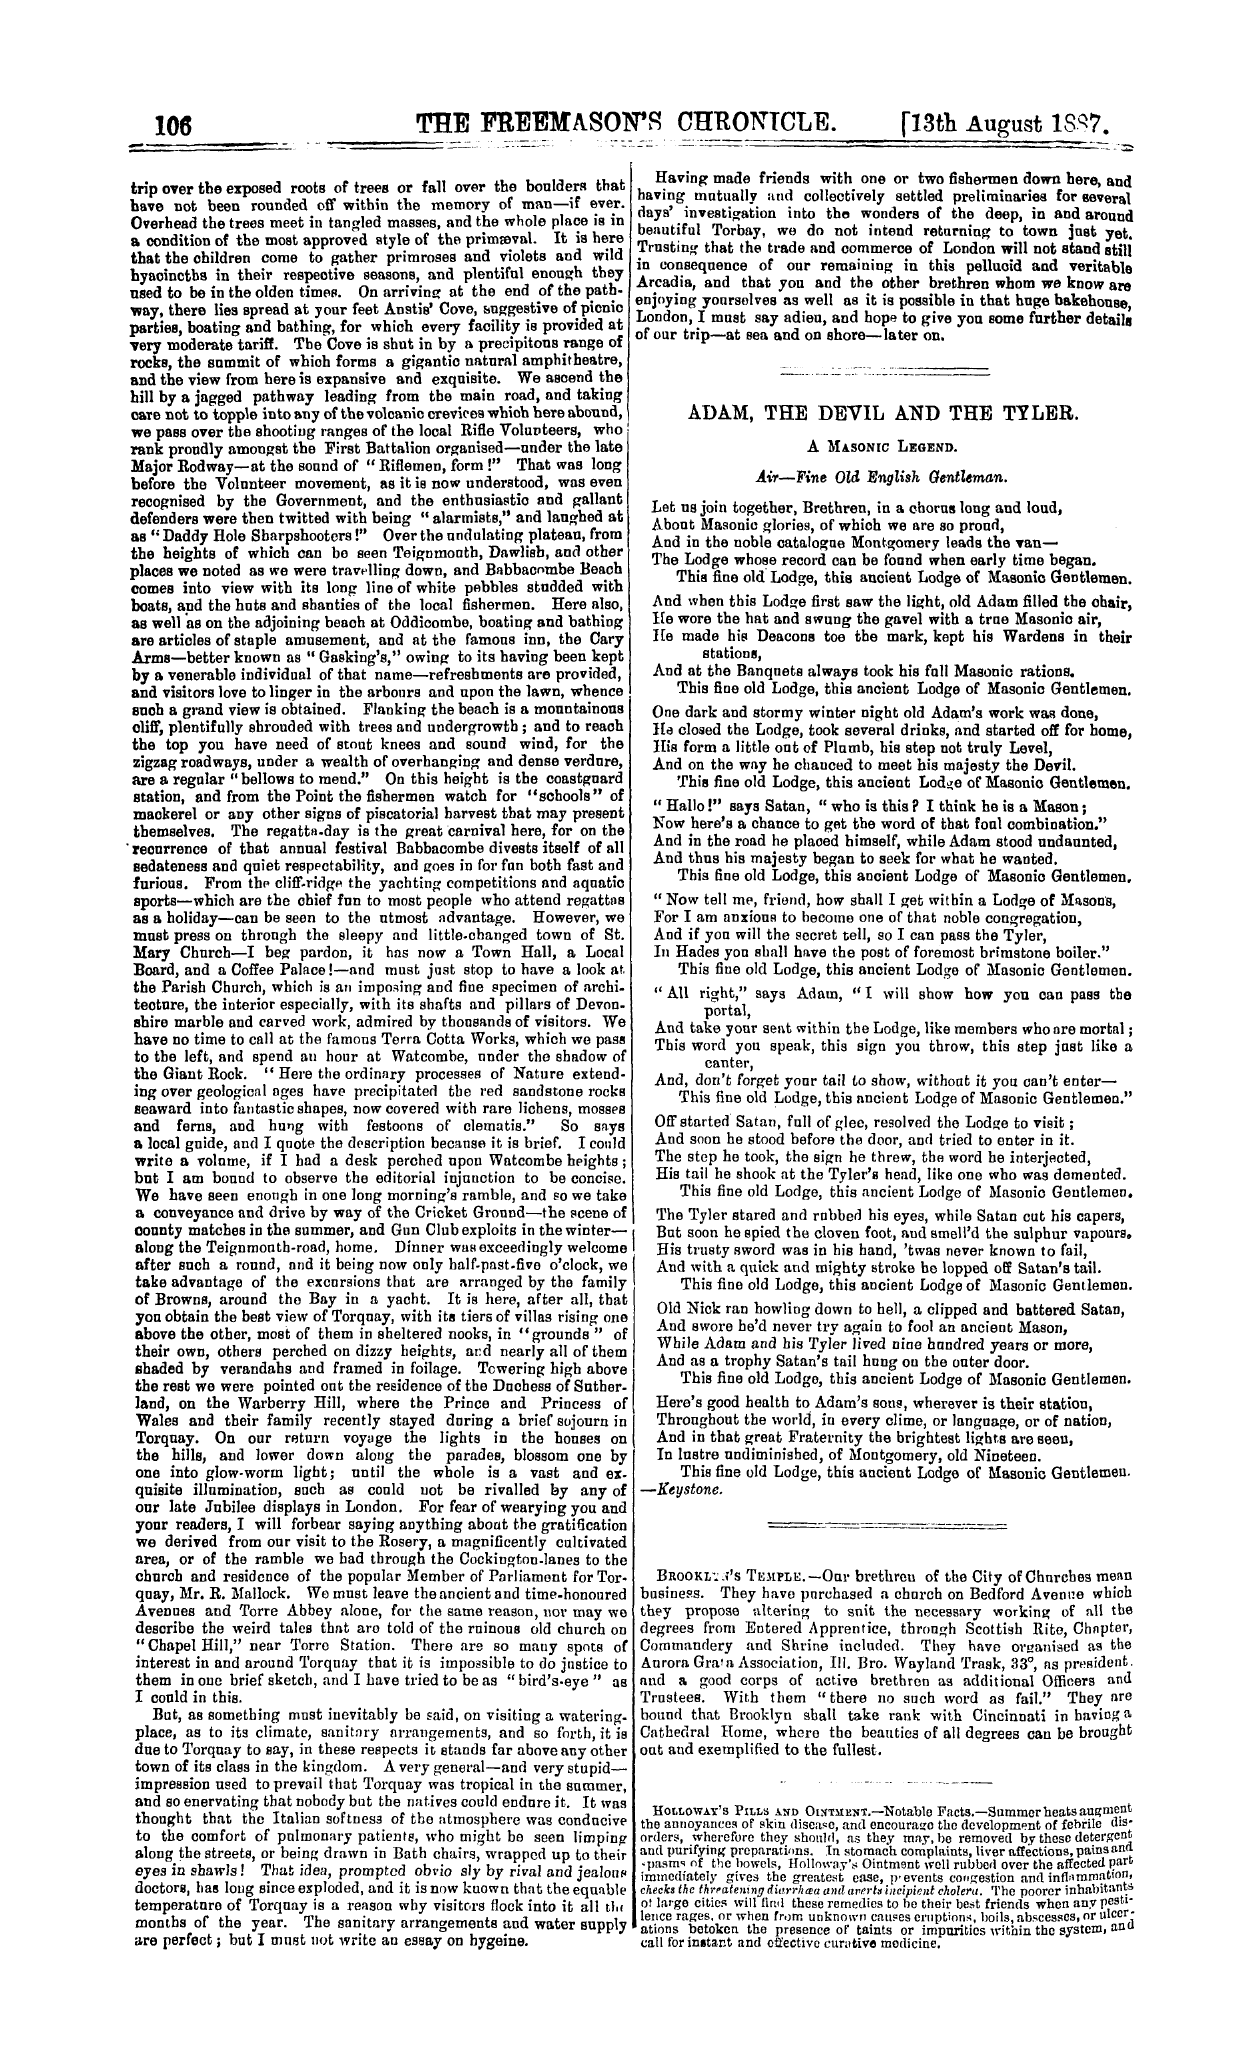 The Freemason's Chronicle: 1887-08-13 - Holiday Haunts.—Torquay.